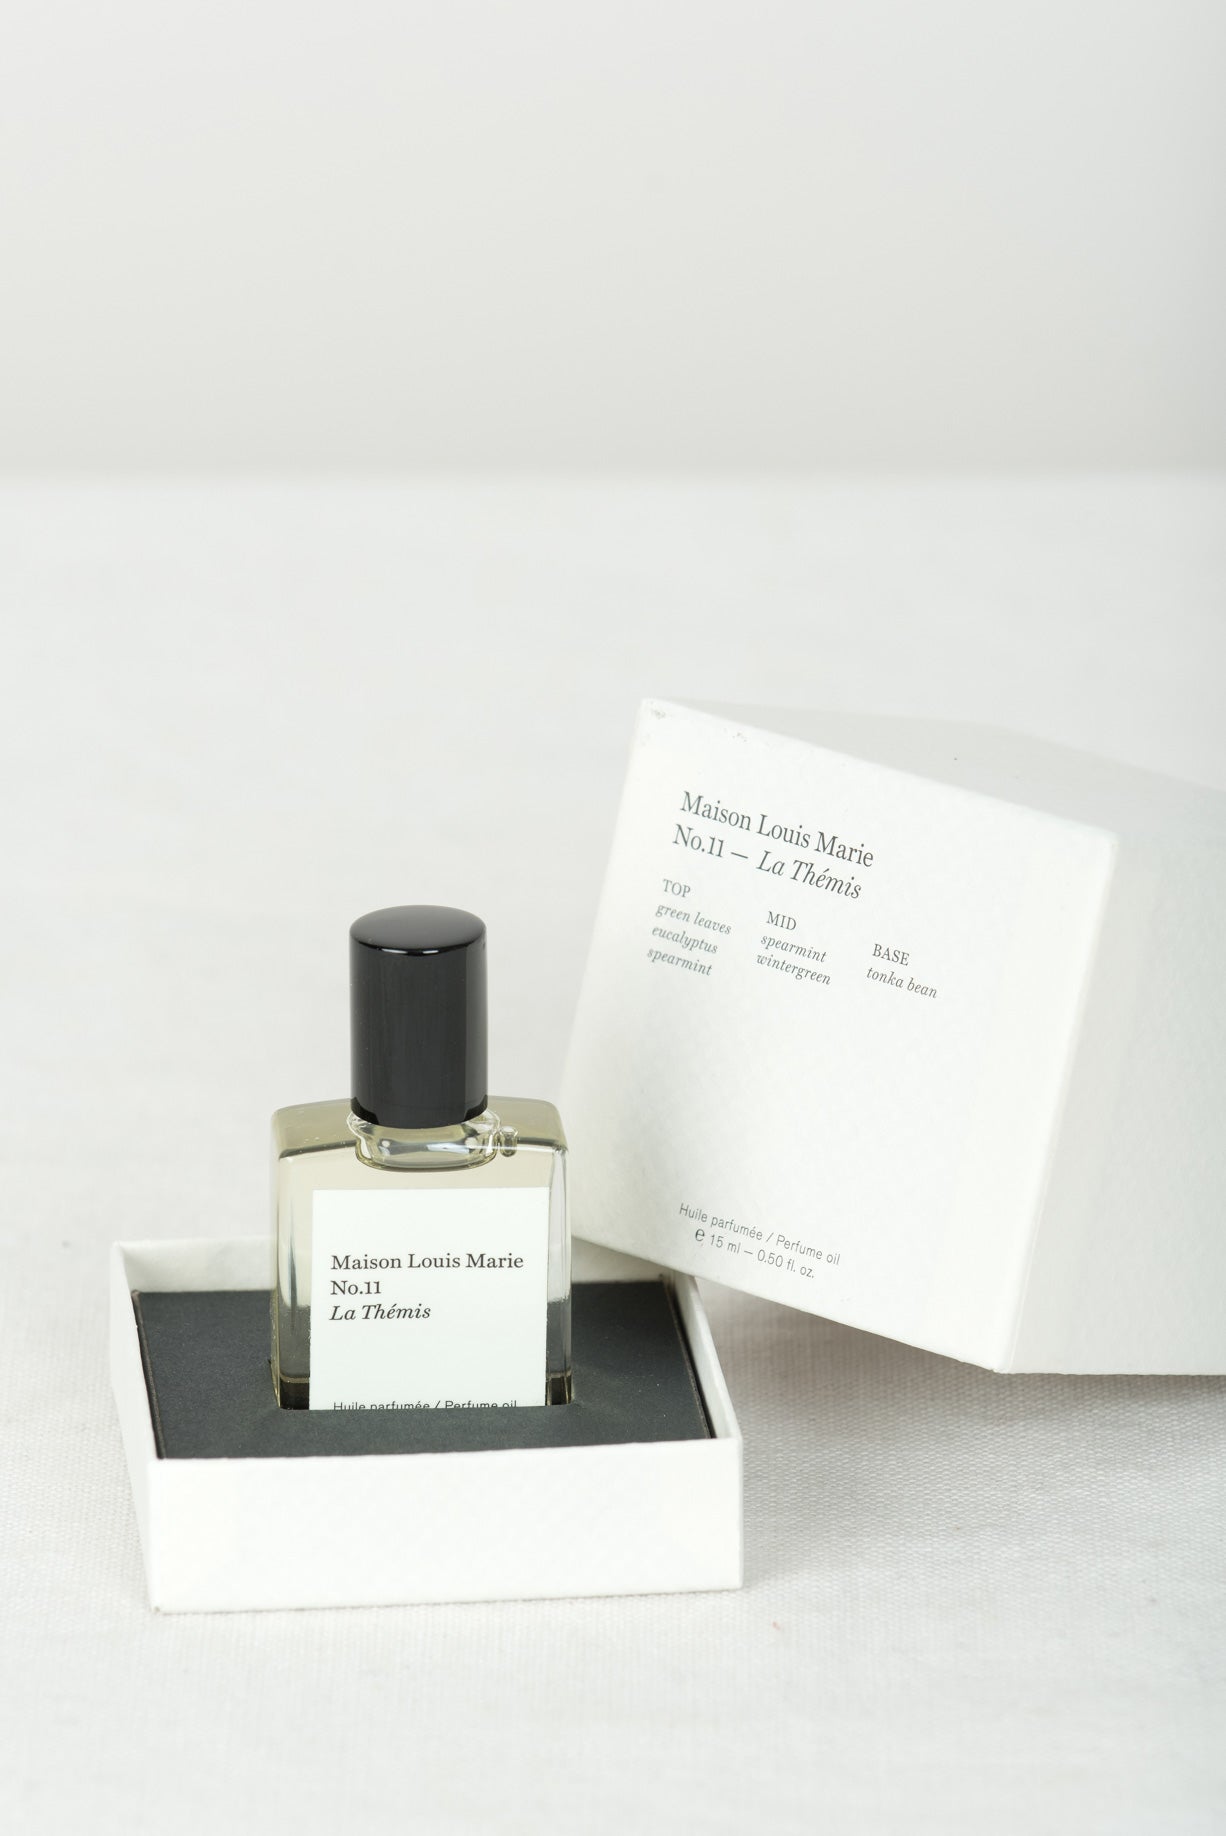 Maison Louis Marie Le Themis Perfume oil